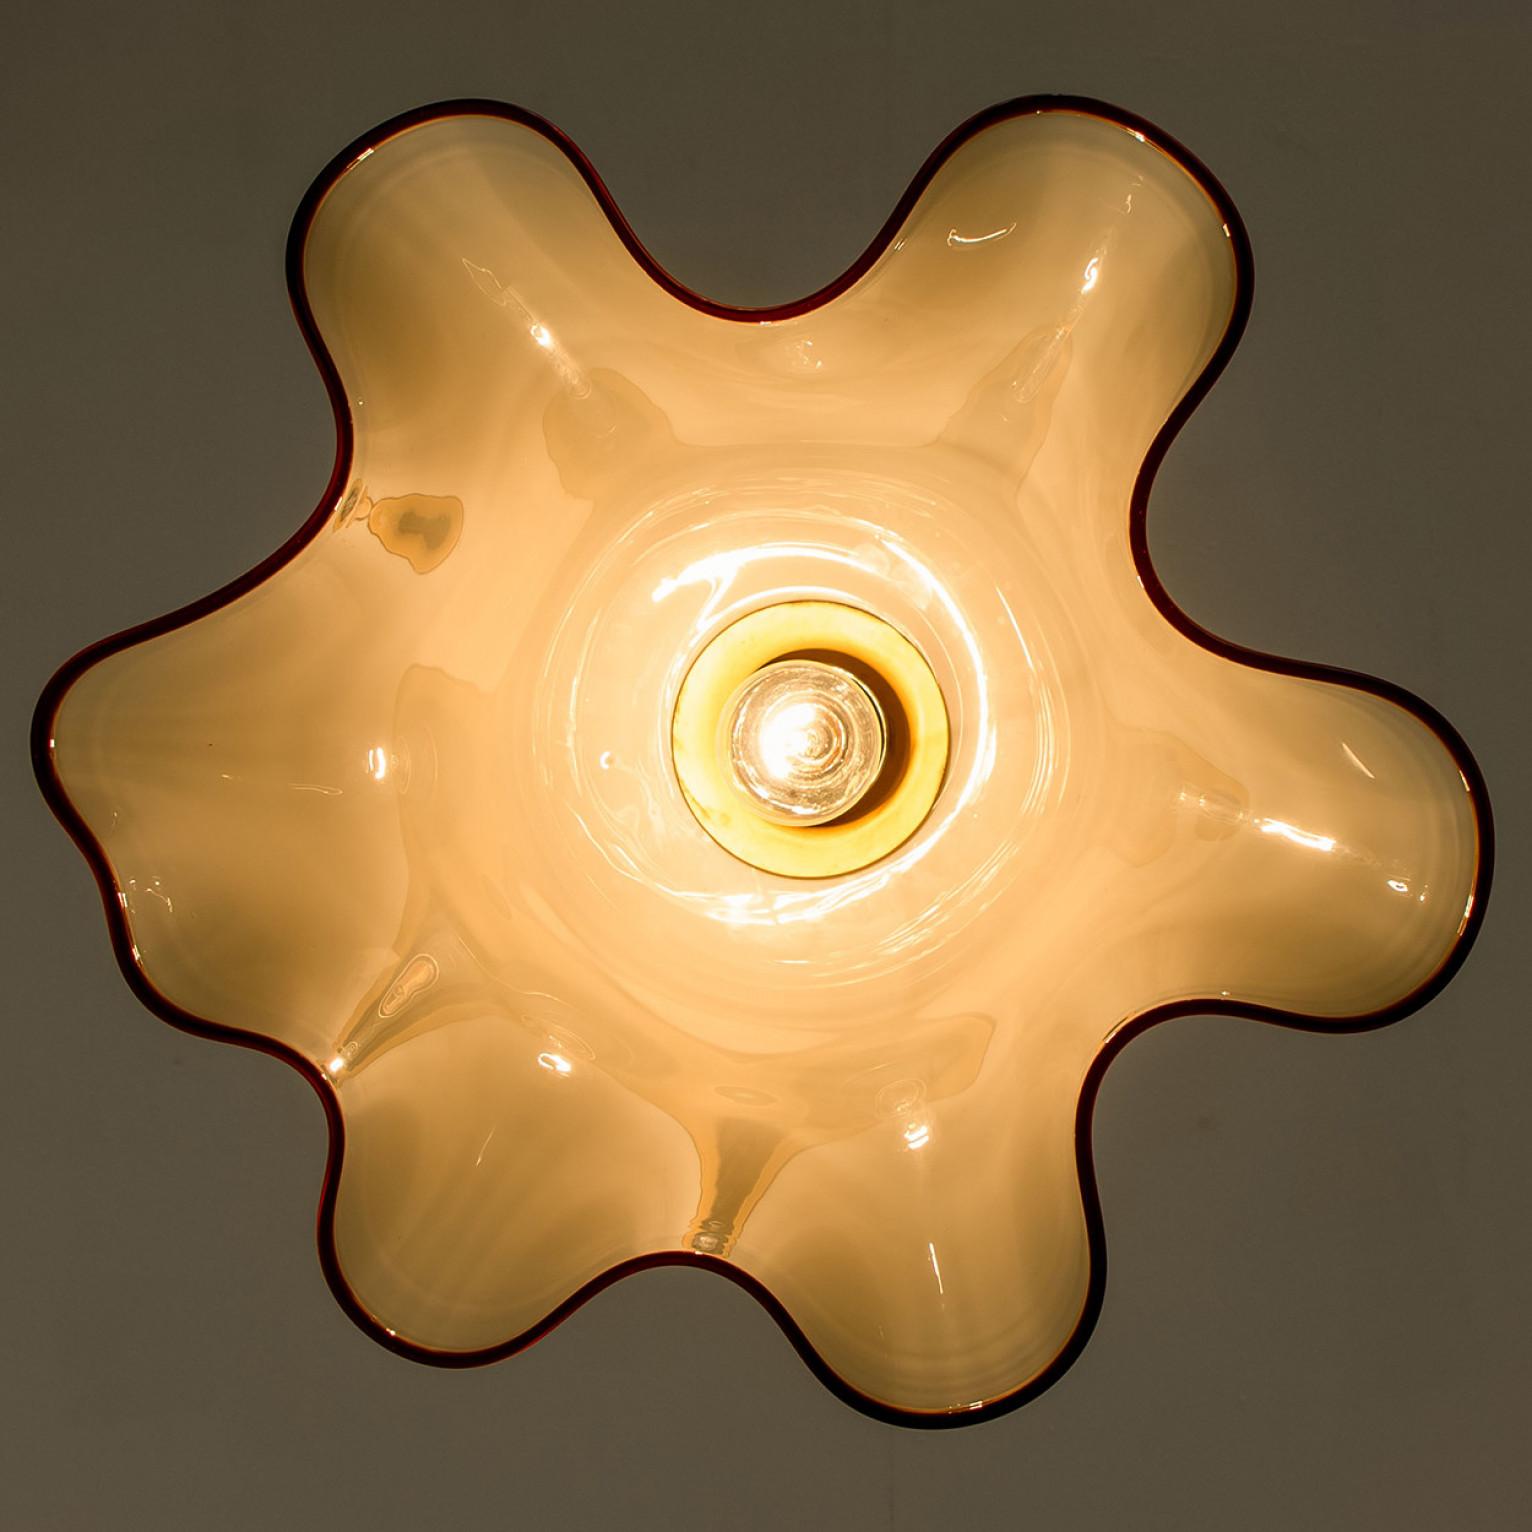 Messingkronleuchter aus der Mitte des Jahrhunderts in Form einer Blume von J.T. Kalmar, Österreich um 1970.
Leuchtet wunderschön.

Entworfen und ausgeführt von Kalmar Wien in den 1970er Jahren. Das weiß-gelbe undurchsichtige Glas hat einen roten